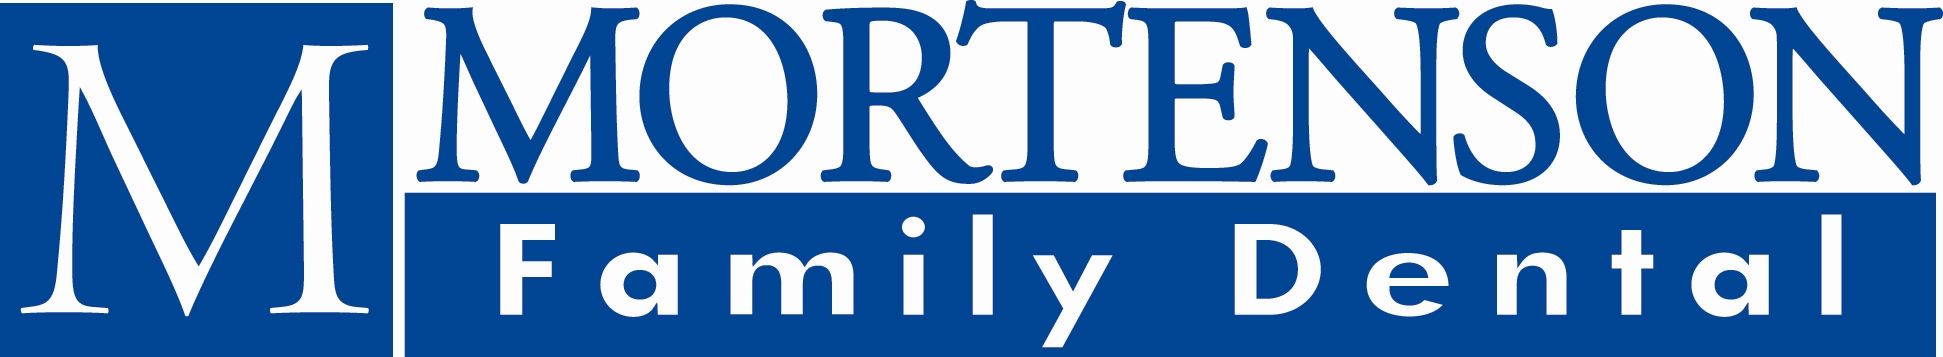 Mortenson Family Dental Company Logo